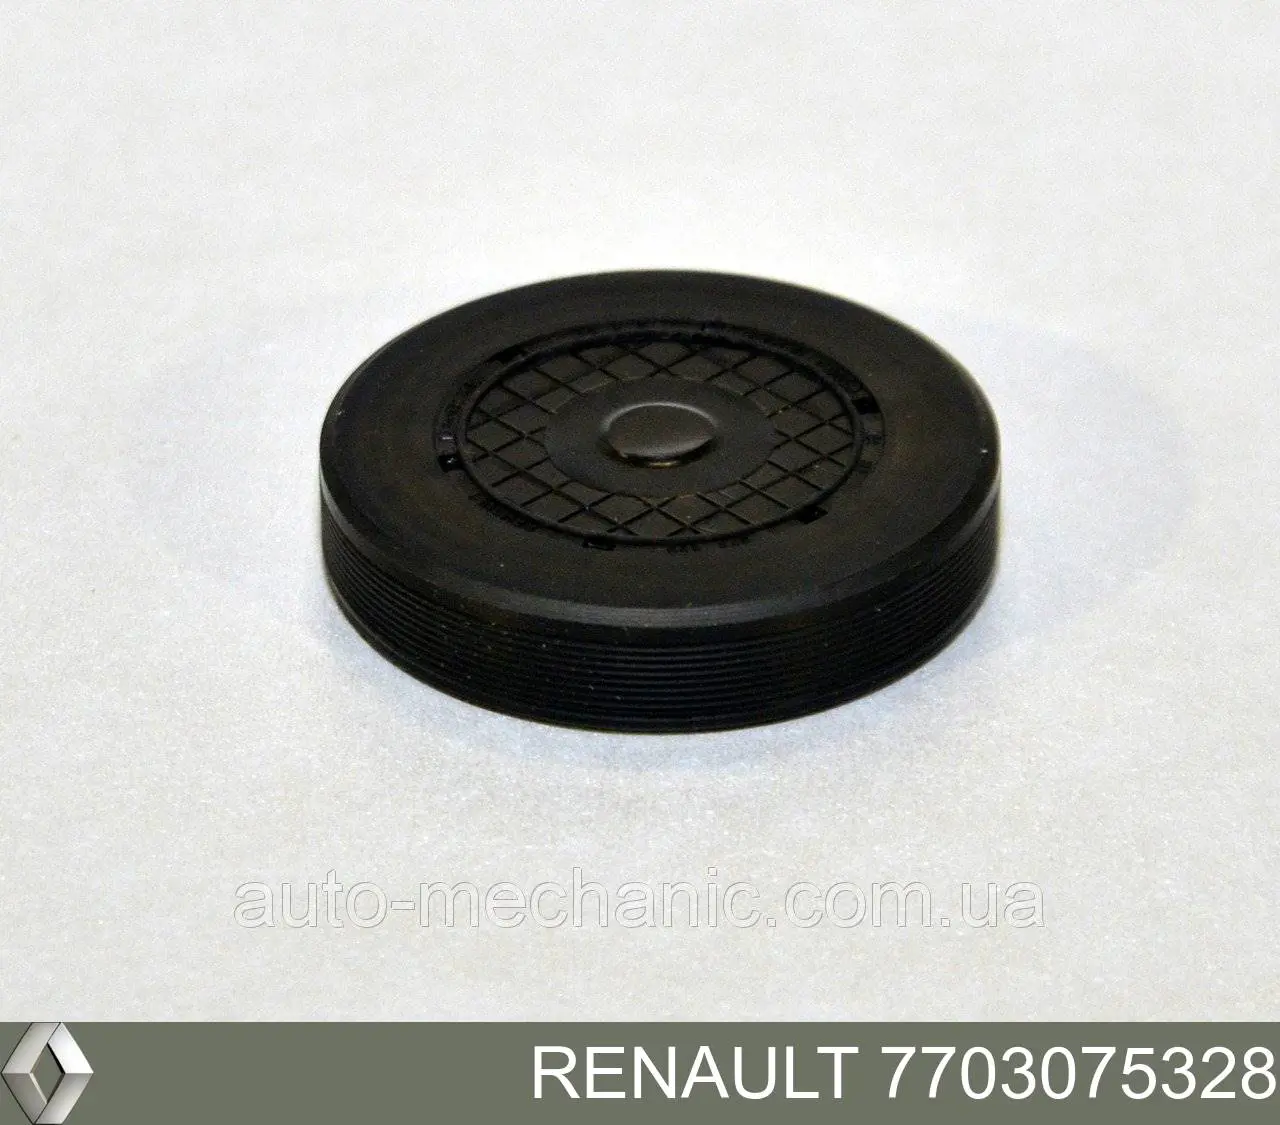 7703075328 Renault (RVI) tampão cbc/do bloco de cilindros